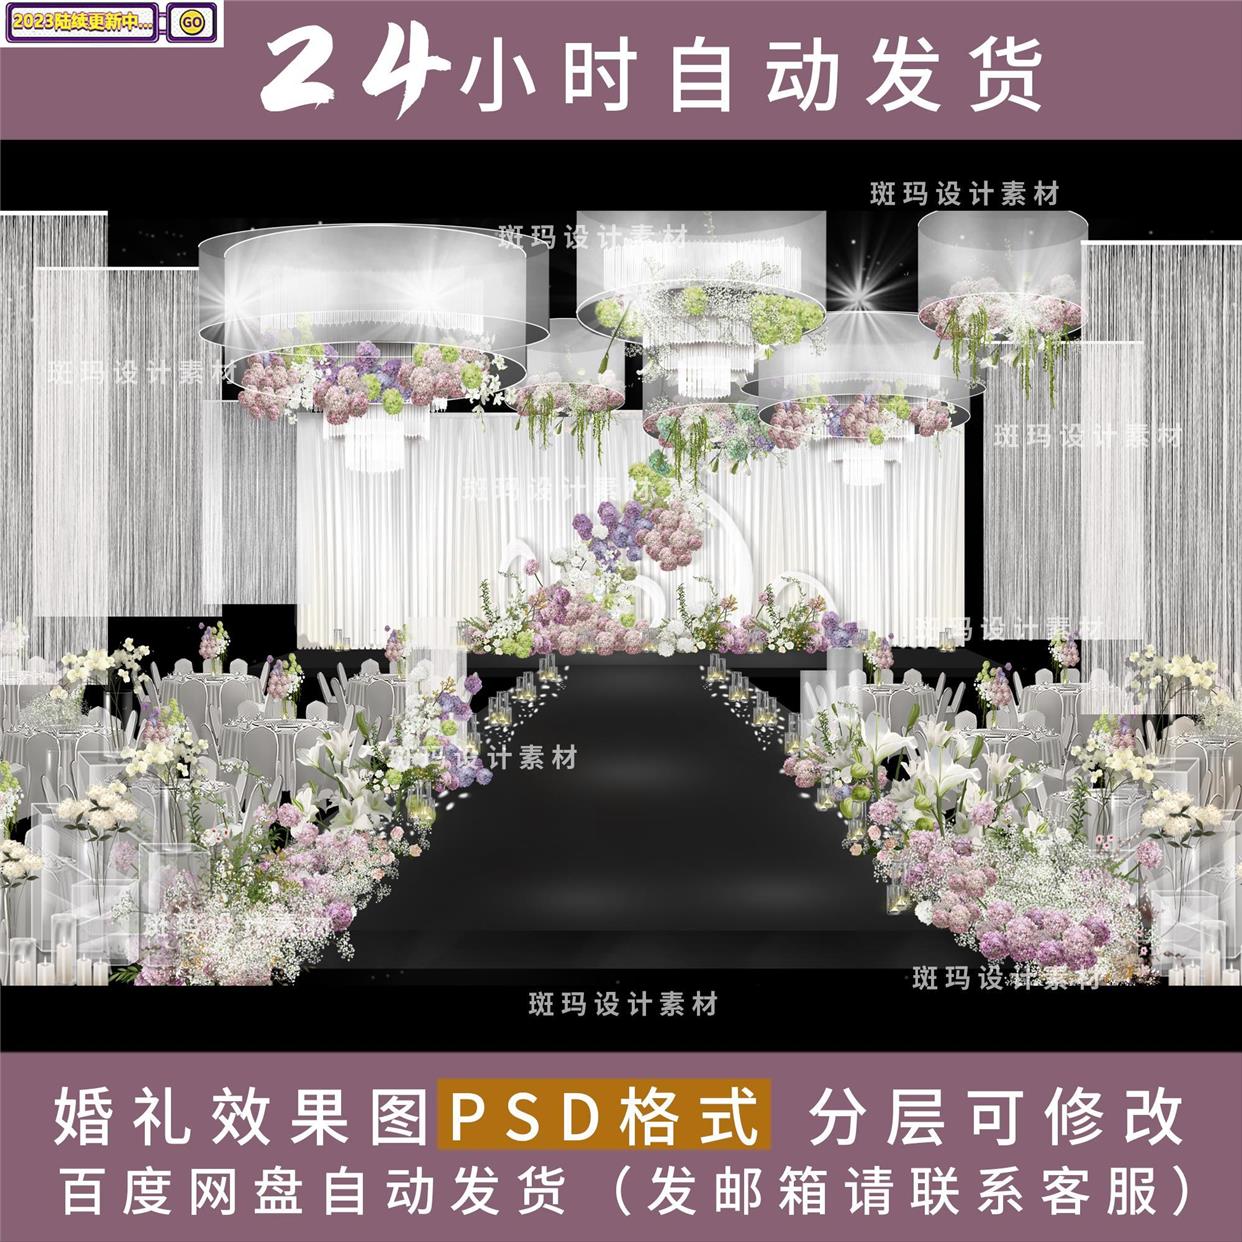 韩式线帘婚礼手绘效果图素材设计韩式满天星紫粉色花艺素材